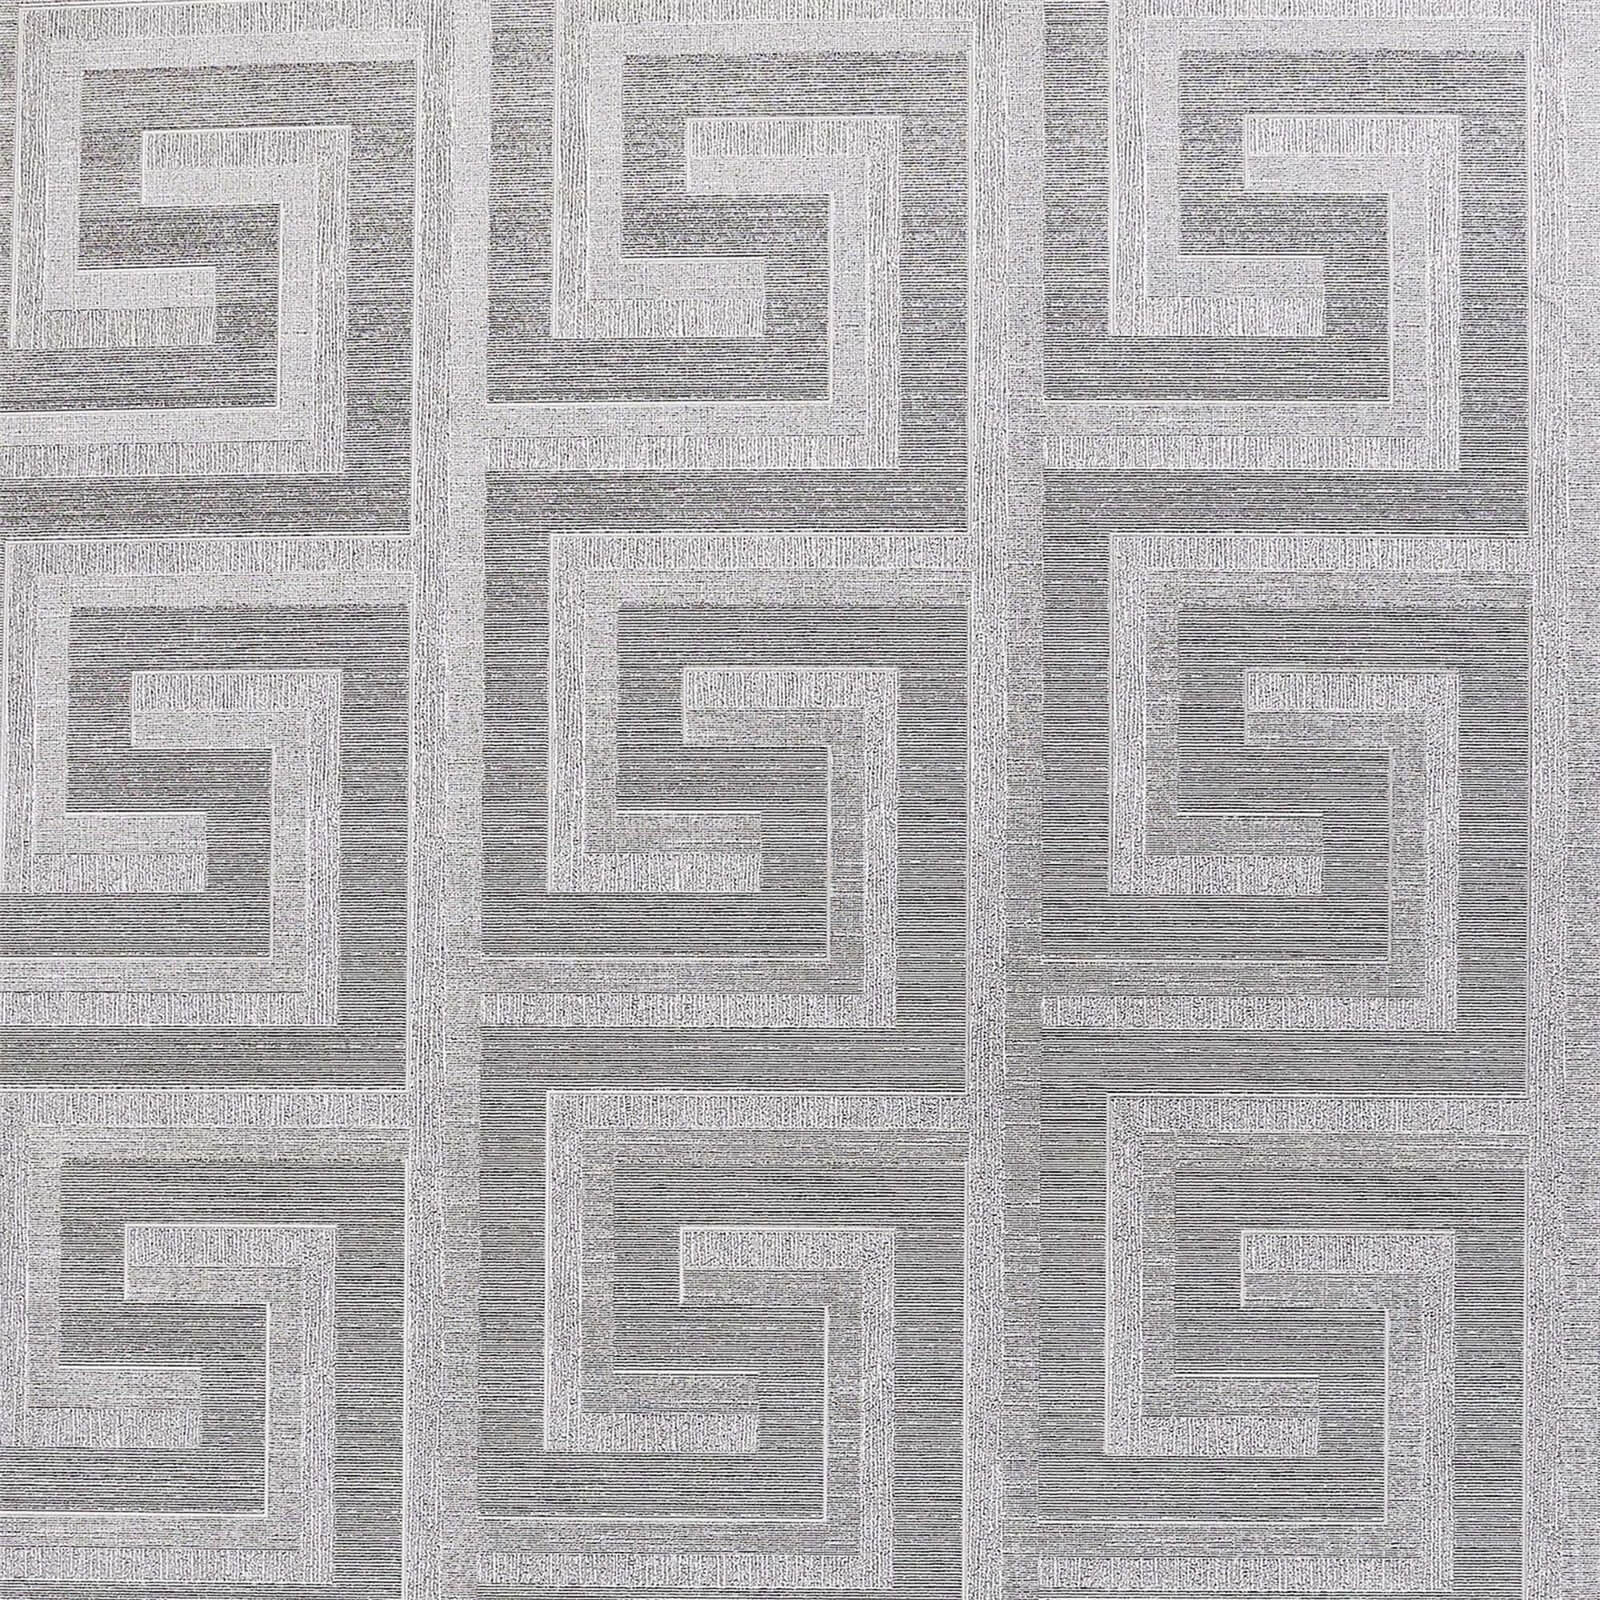 Arthouse Greek Key Foil Silver Wallpaper